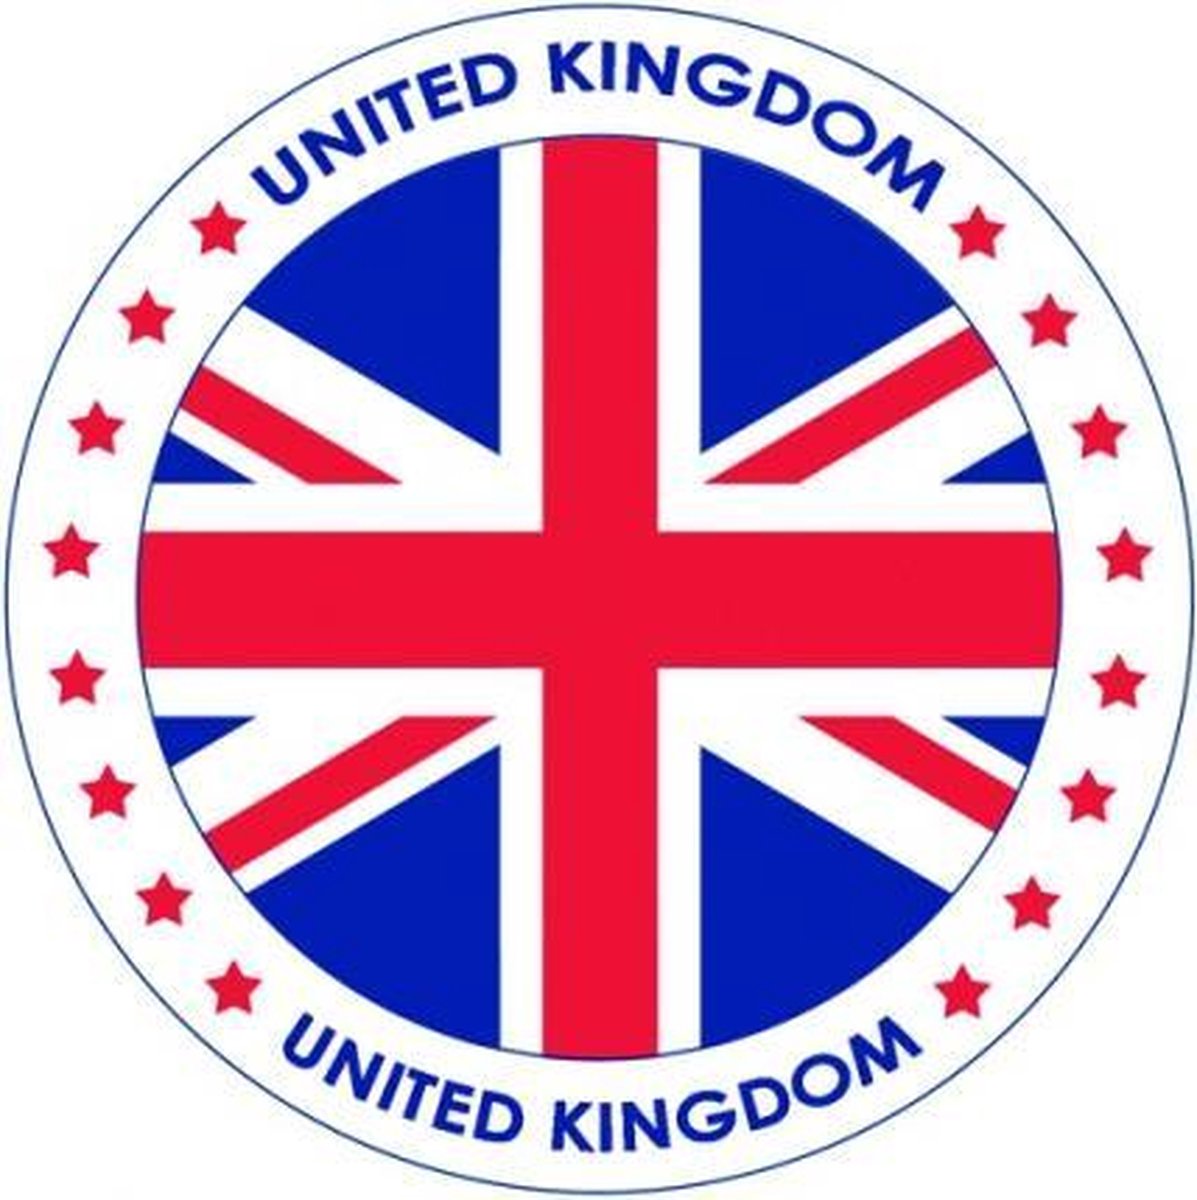 100x Bierviltjes Engeland thema print - Onderzetters Britse vlag - Landen decoratie feestartikelen